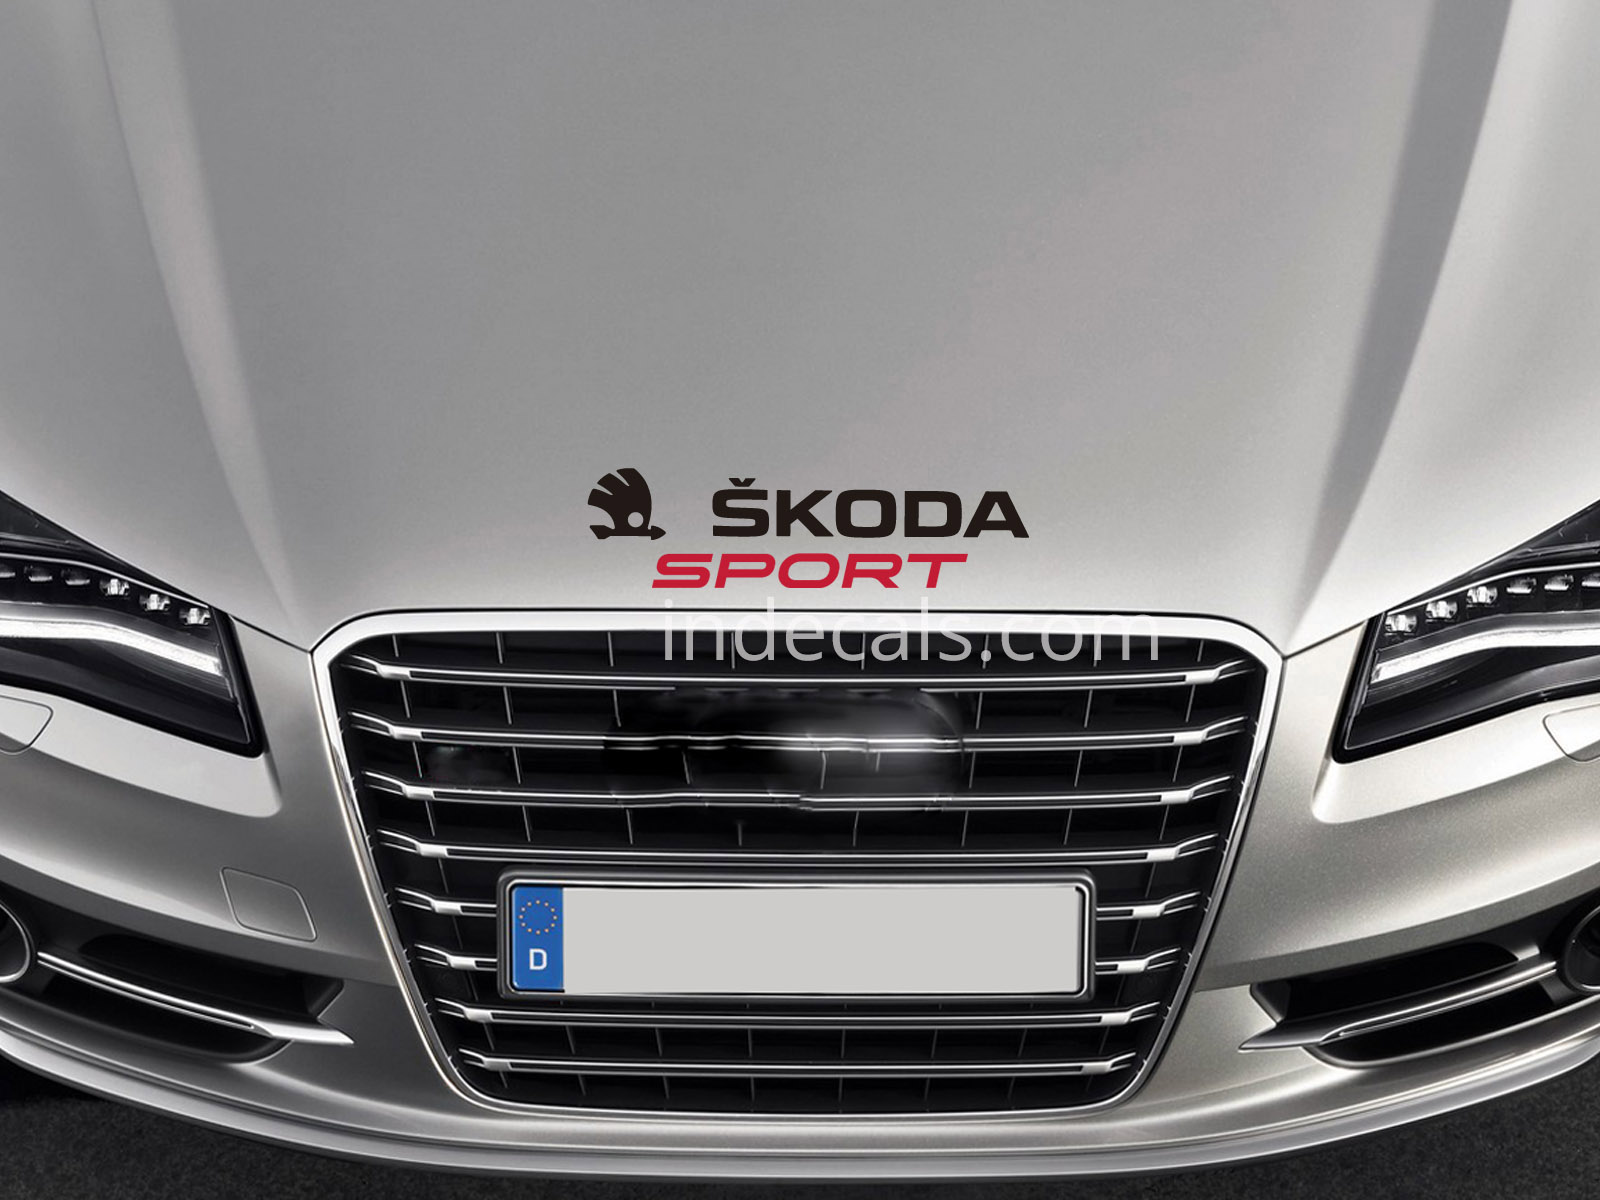 1 x Skoda Sport Sticker for Bonnet - Black & Red